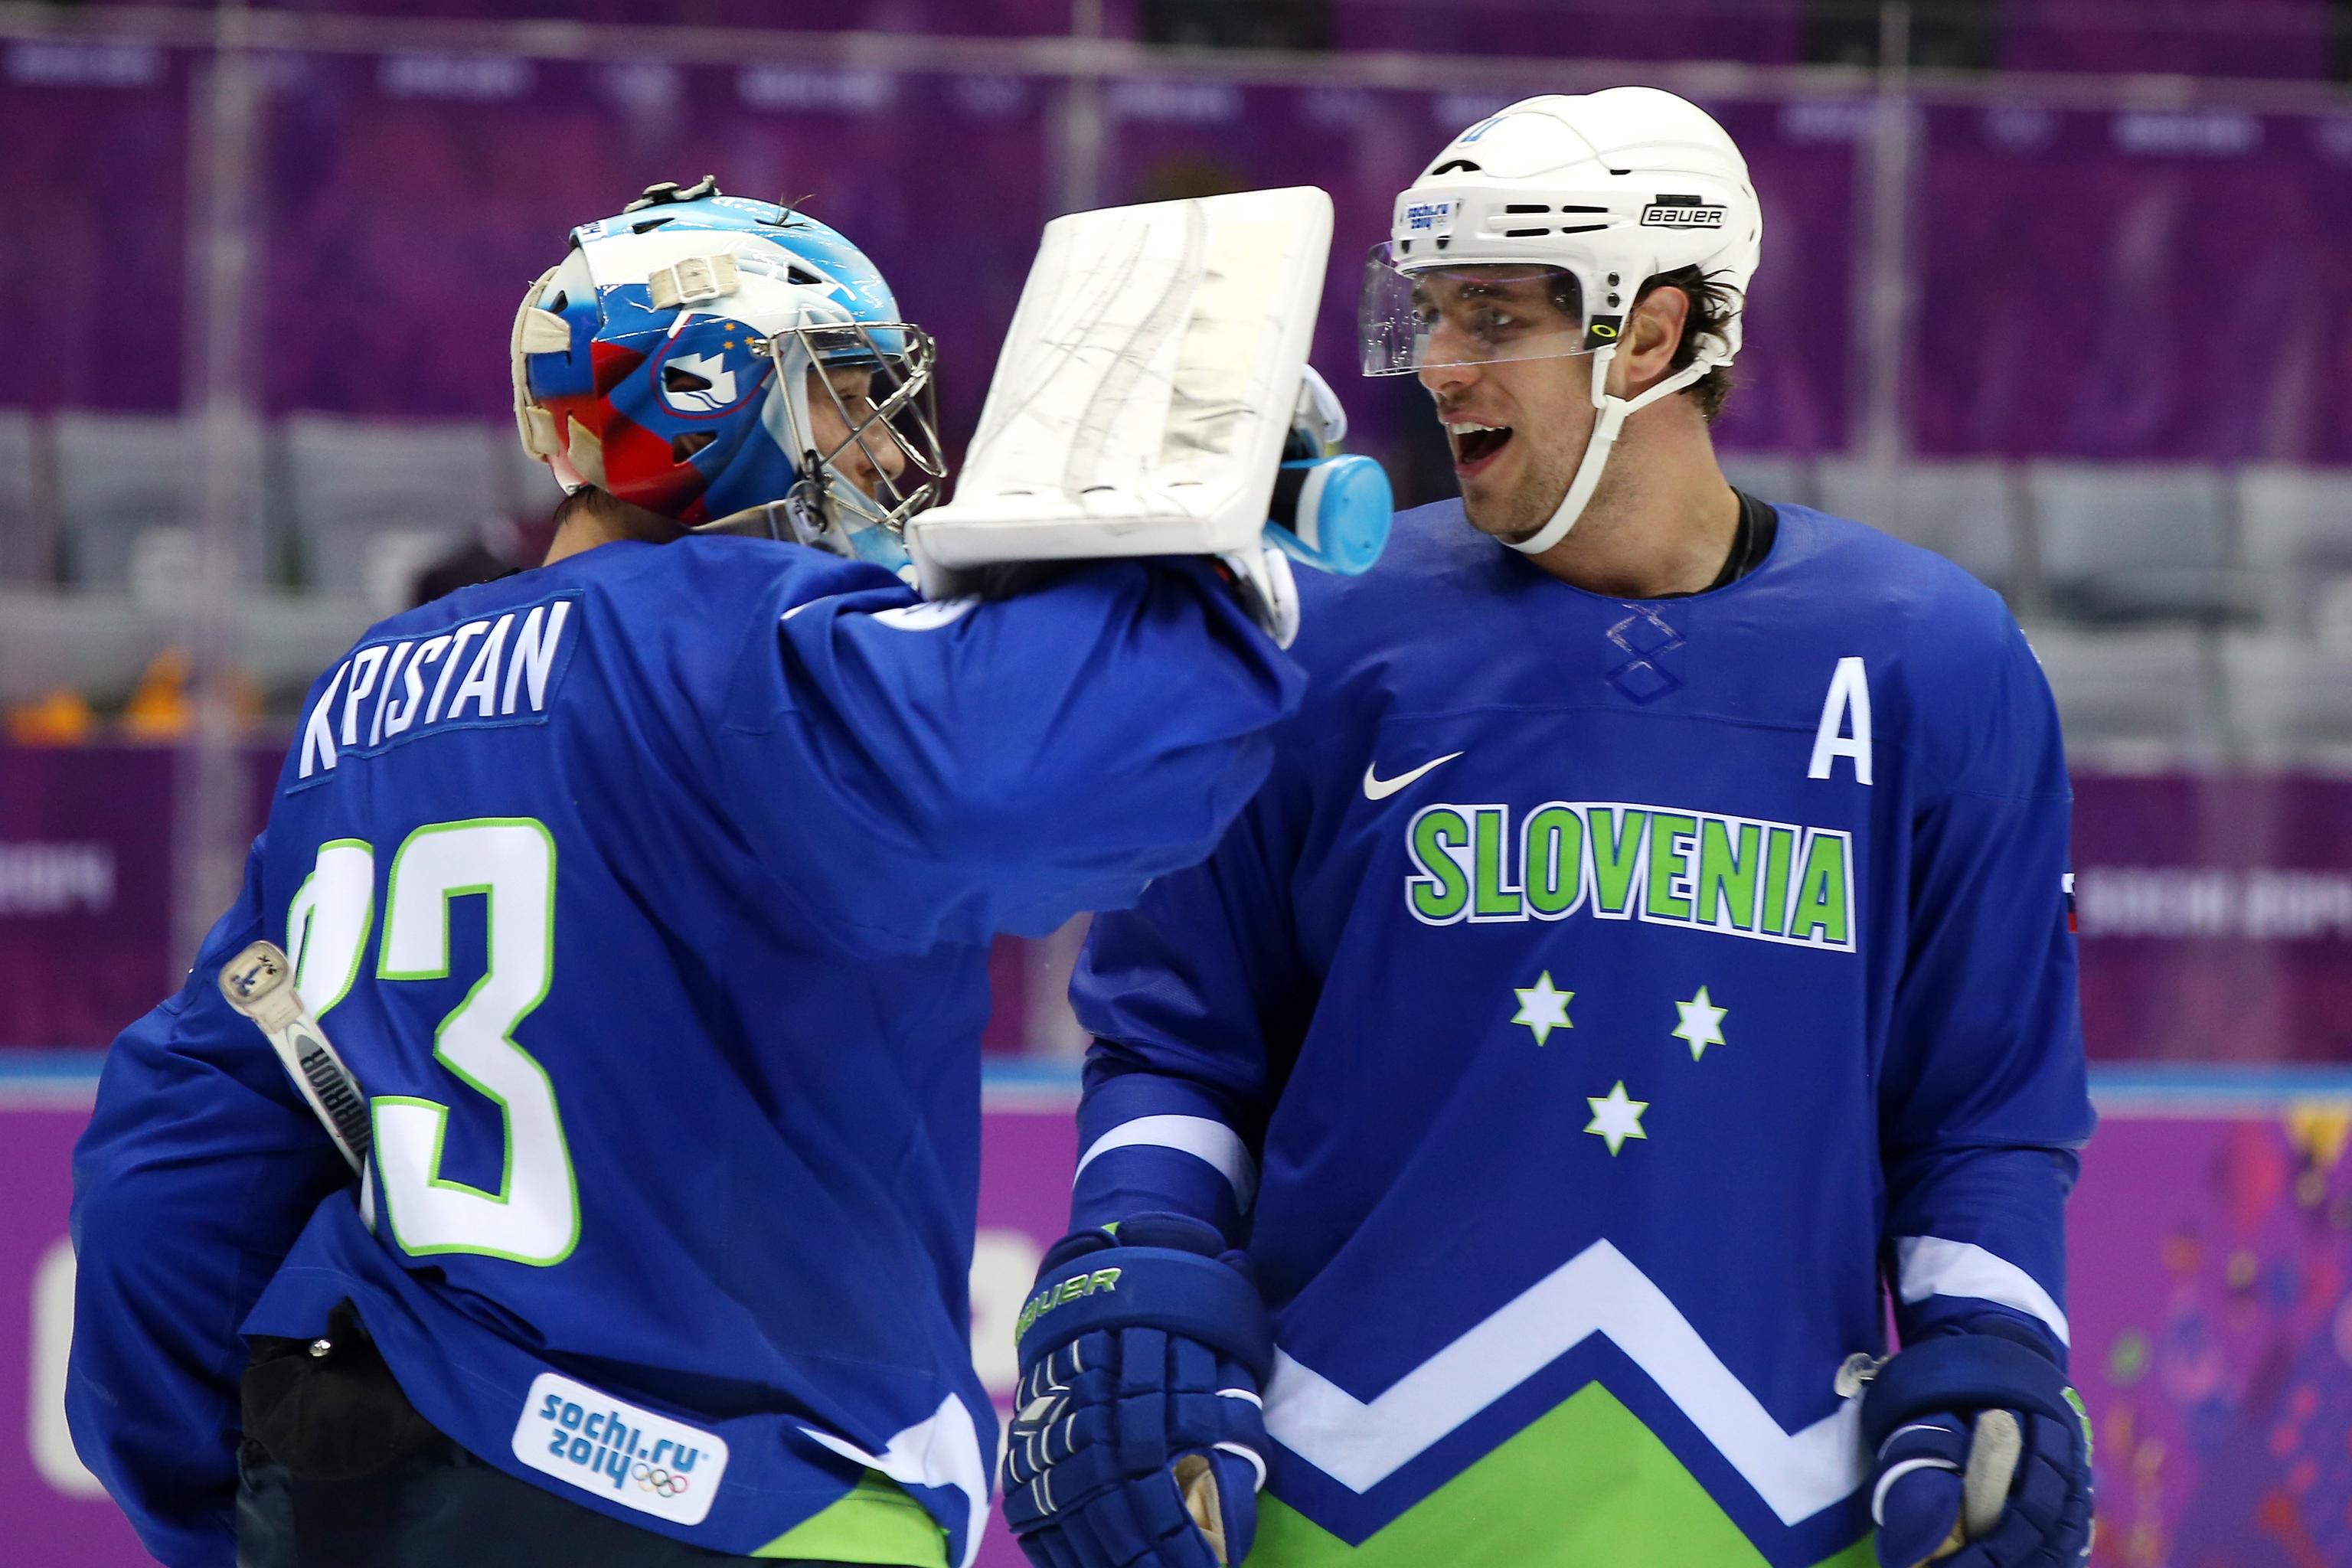 File:Slovenia national hockey team jerseys - 2014 Winter Olympics